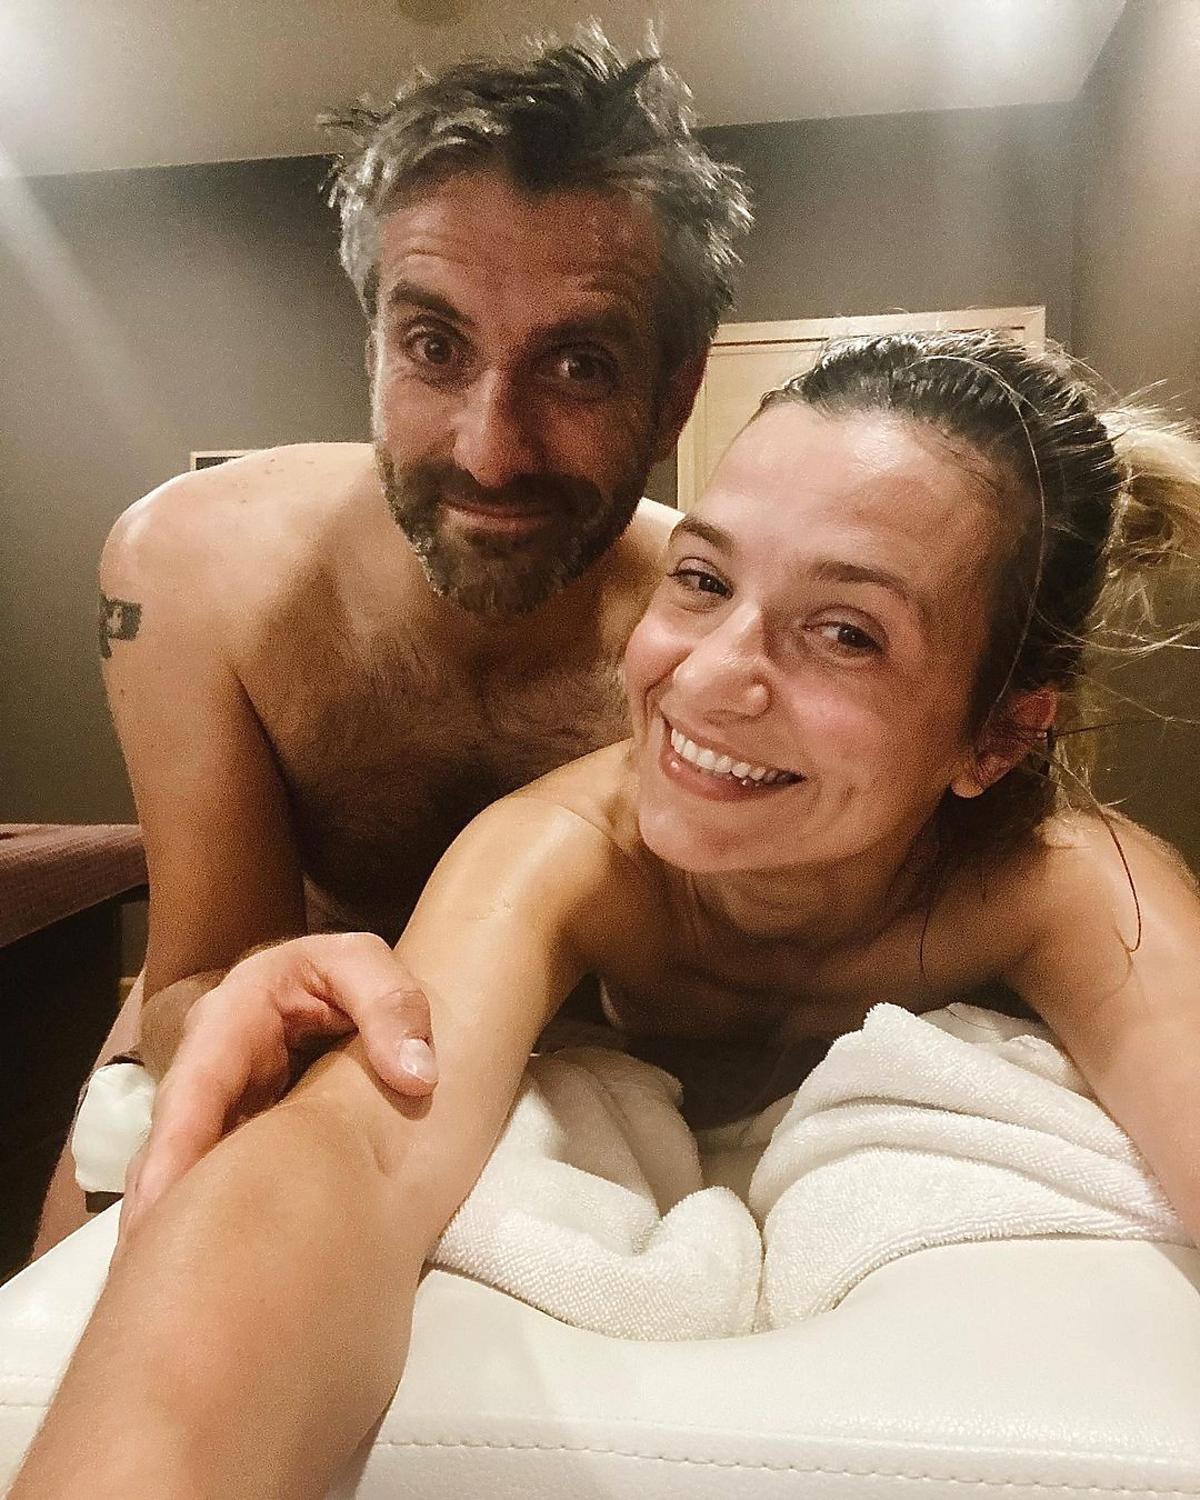 Joanna Koroniewska i Maciej Dowbor relaksują się w SPA, opublikowali zdjęcie bez ubrań